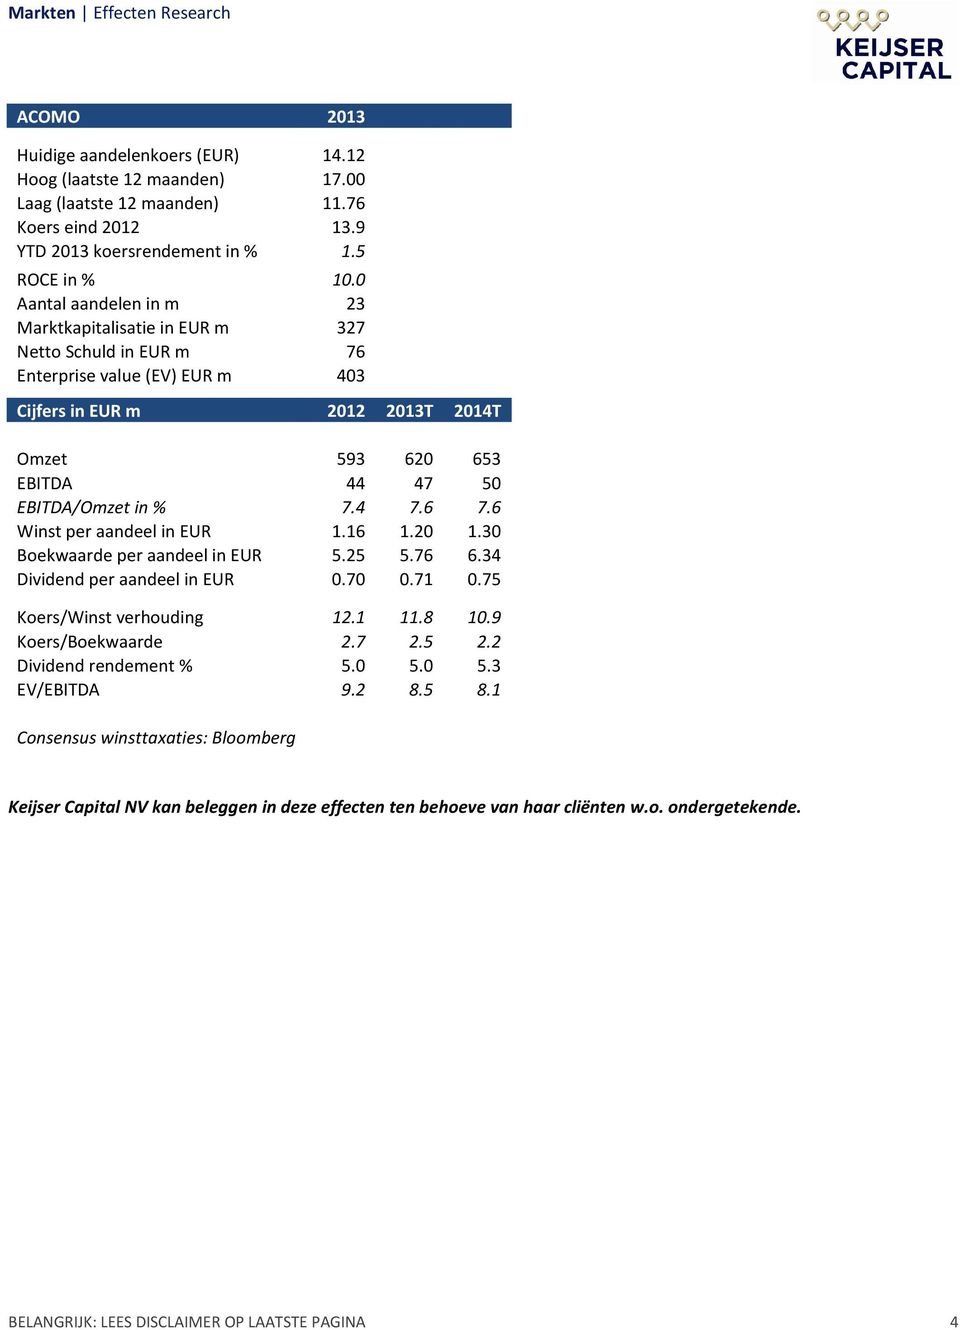 % 7.4 7.6 7.6 Winst per aandeel in EUR 1.16 1.20 1.30 Boekwaarde per aandeel in EUR 5.25 5.76 6.34 Dividend per aandeel in EUR 0.70 0.71 0.75 Koers/Winst verhouding 12.1 11.8 10.9 Koers/Boekwaarde 2.